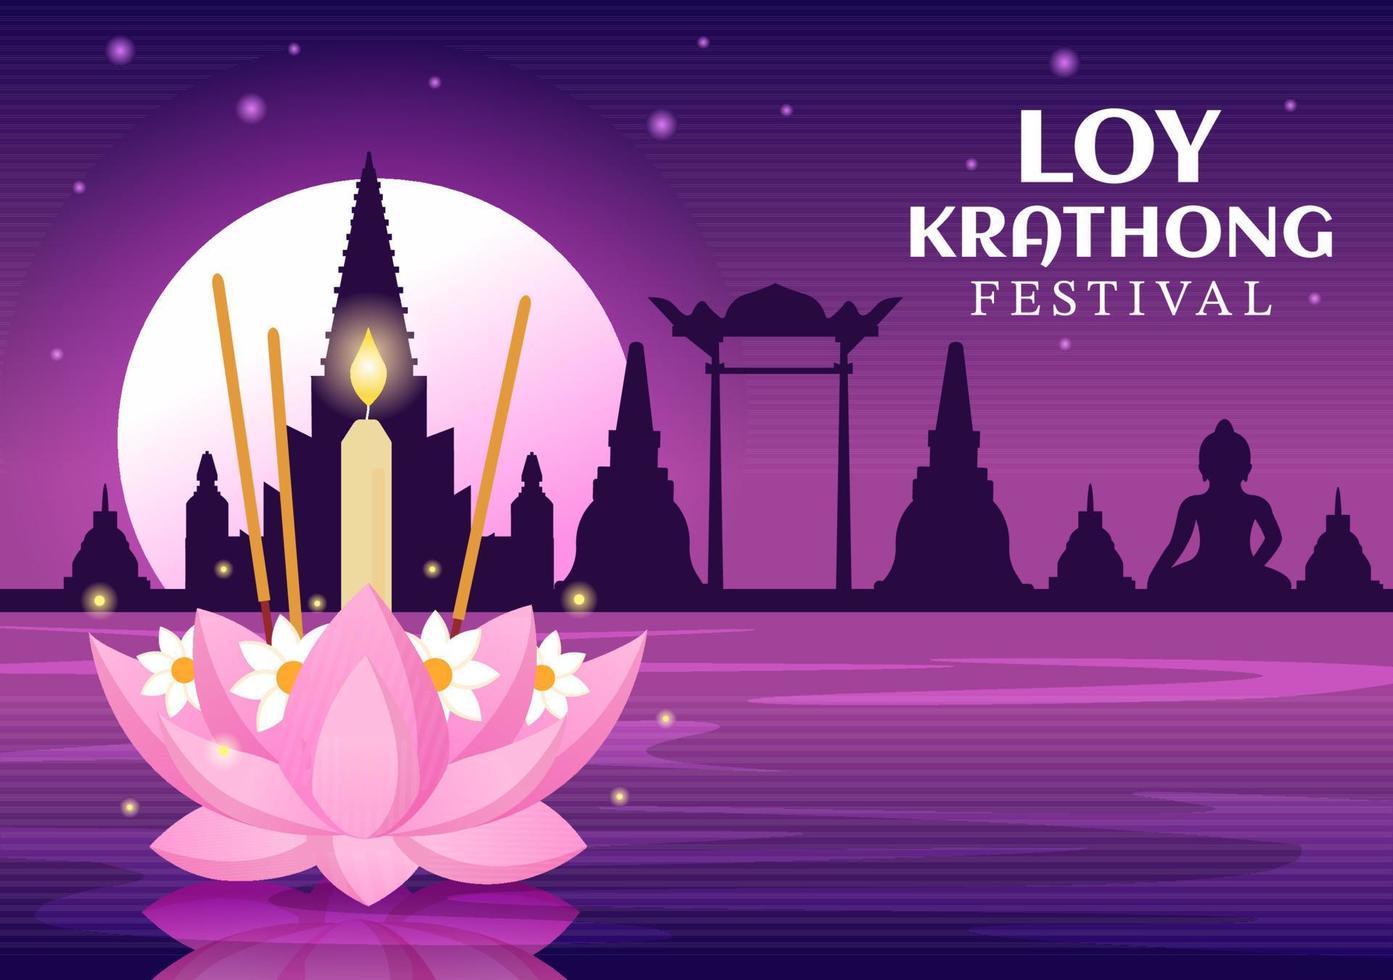 célébration du festival loy krathong en thaïlande modèle illustration plate de dessin animé dessiné à la main avec des lanternes et des krathongs flottant sur la conception de l'eau vecteur